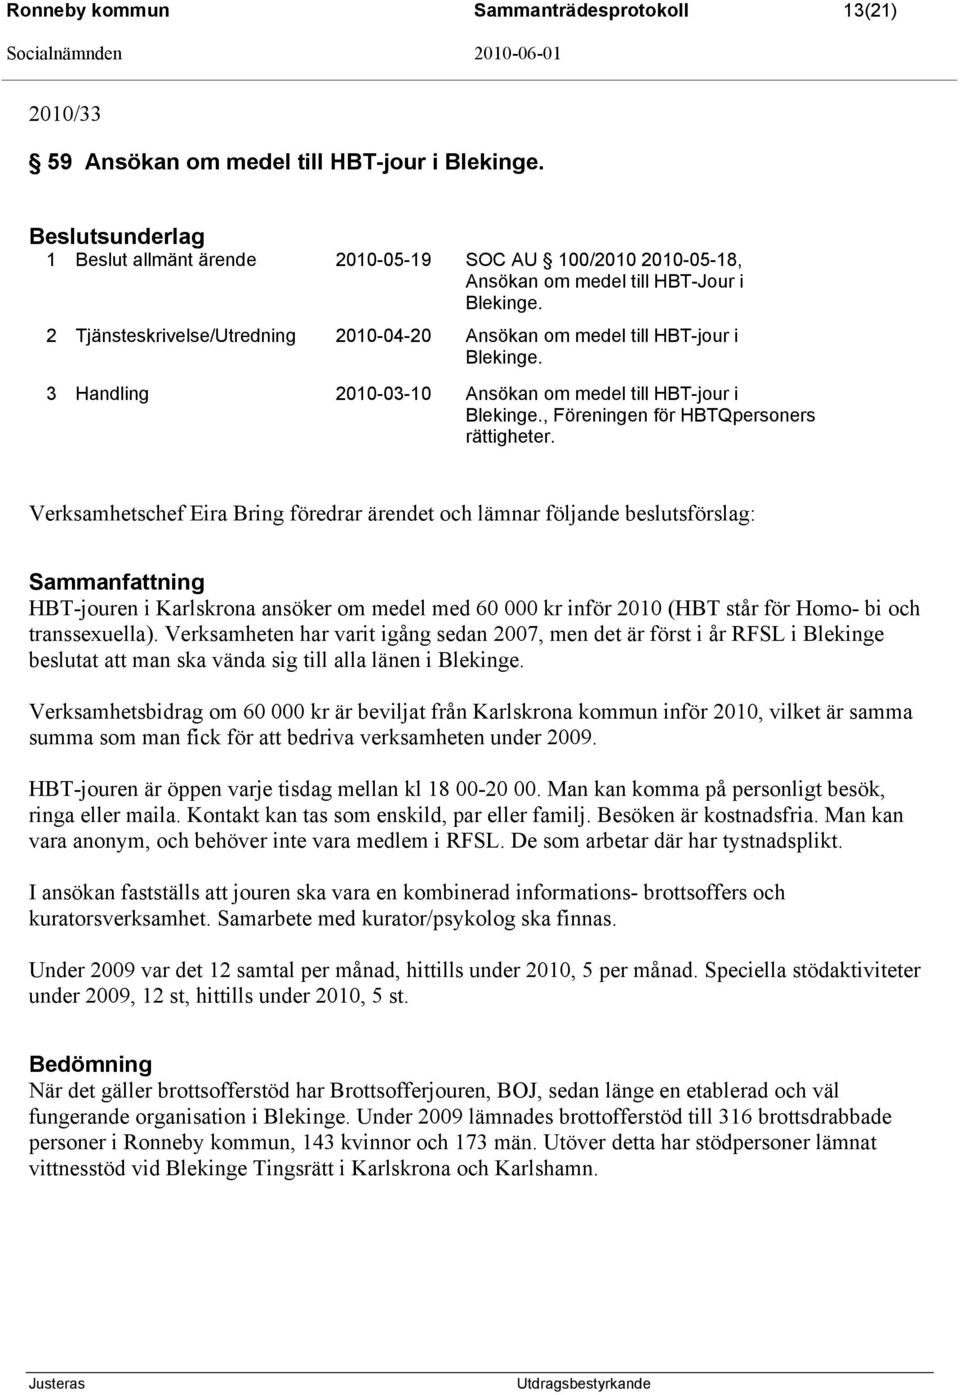 3 Handling 2010-03-10 Ansökan om medel till HBT-jour i Blekinge., Föreningen för HBTQpersoners rättigheter.